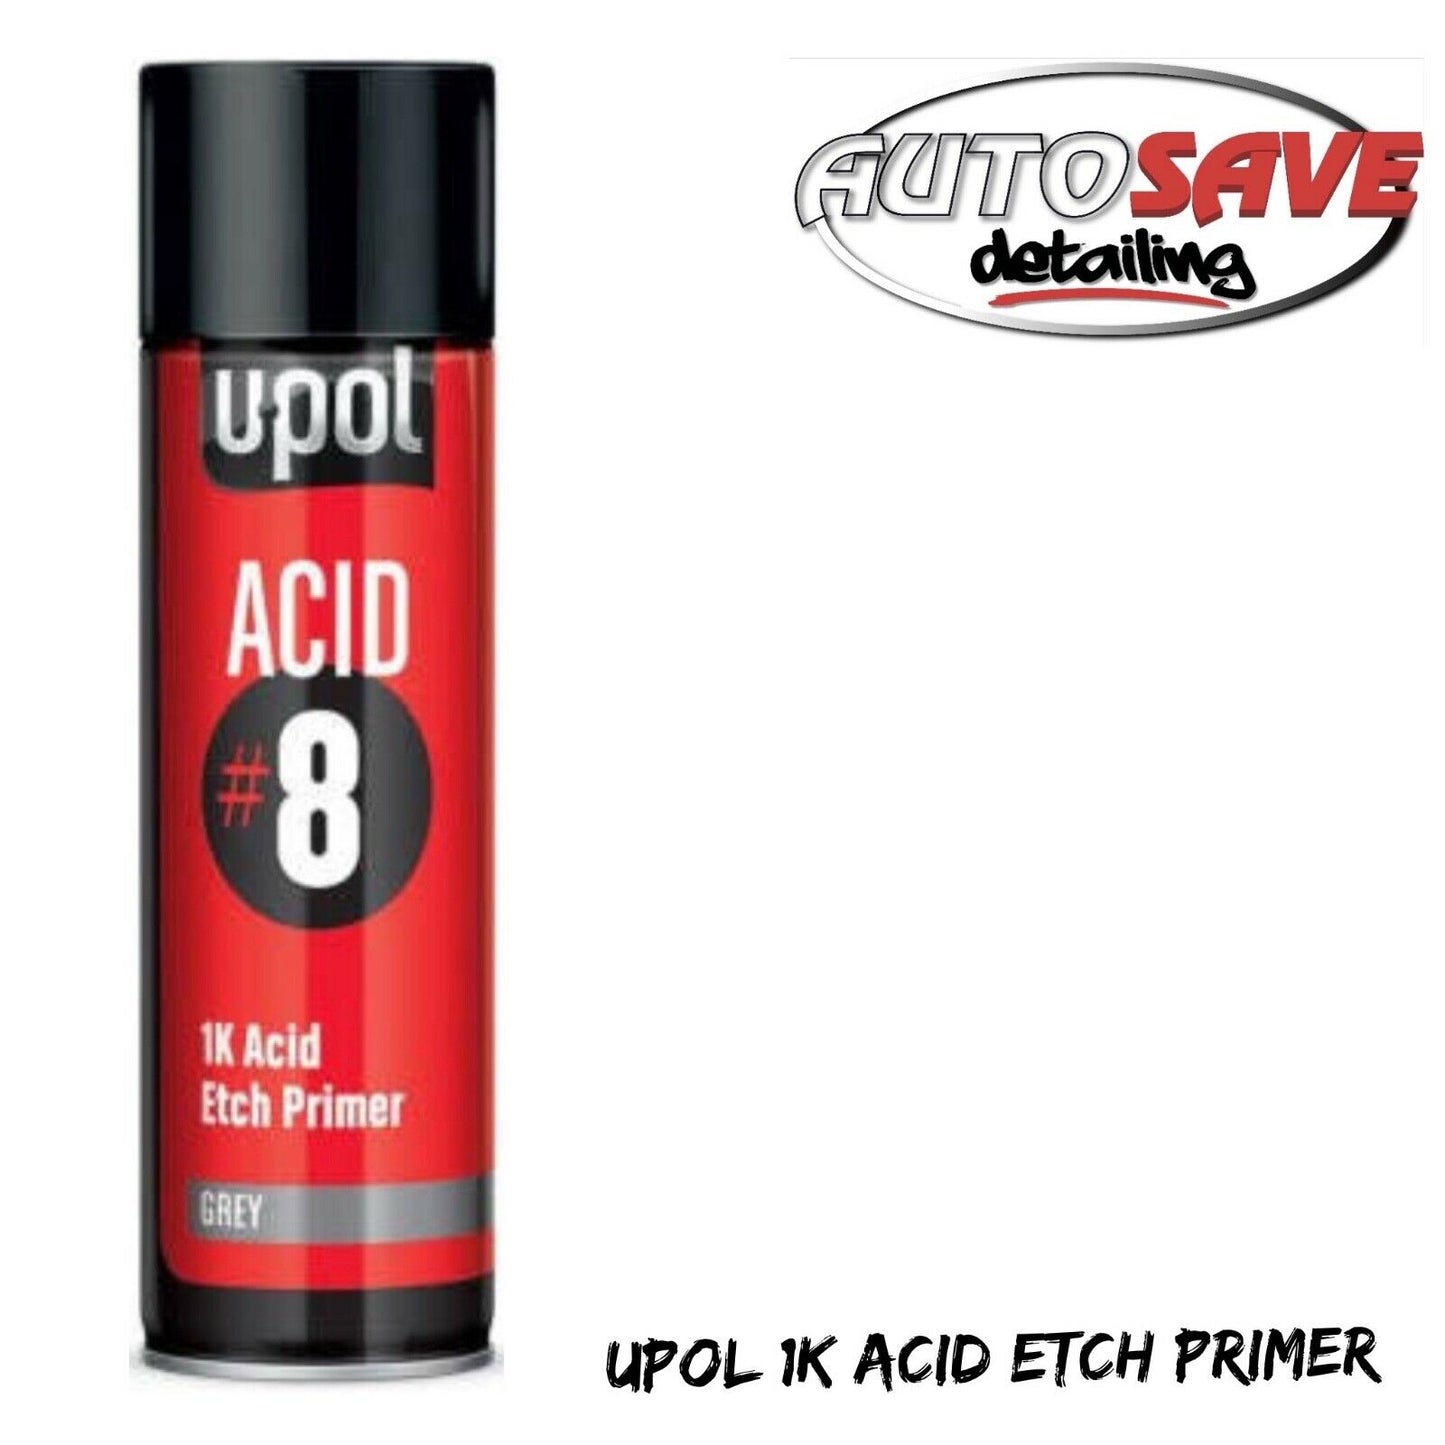 UPOL ACID#8 Etch Primer Aerosol 450ml Acid 8 U-POL